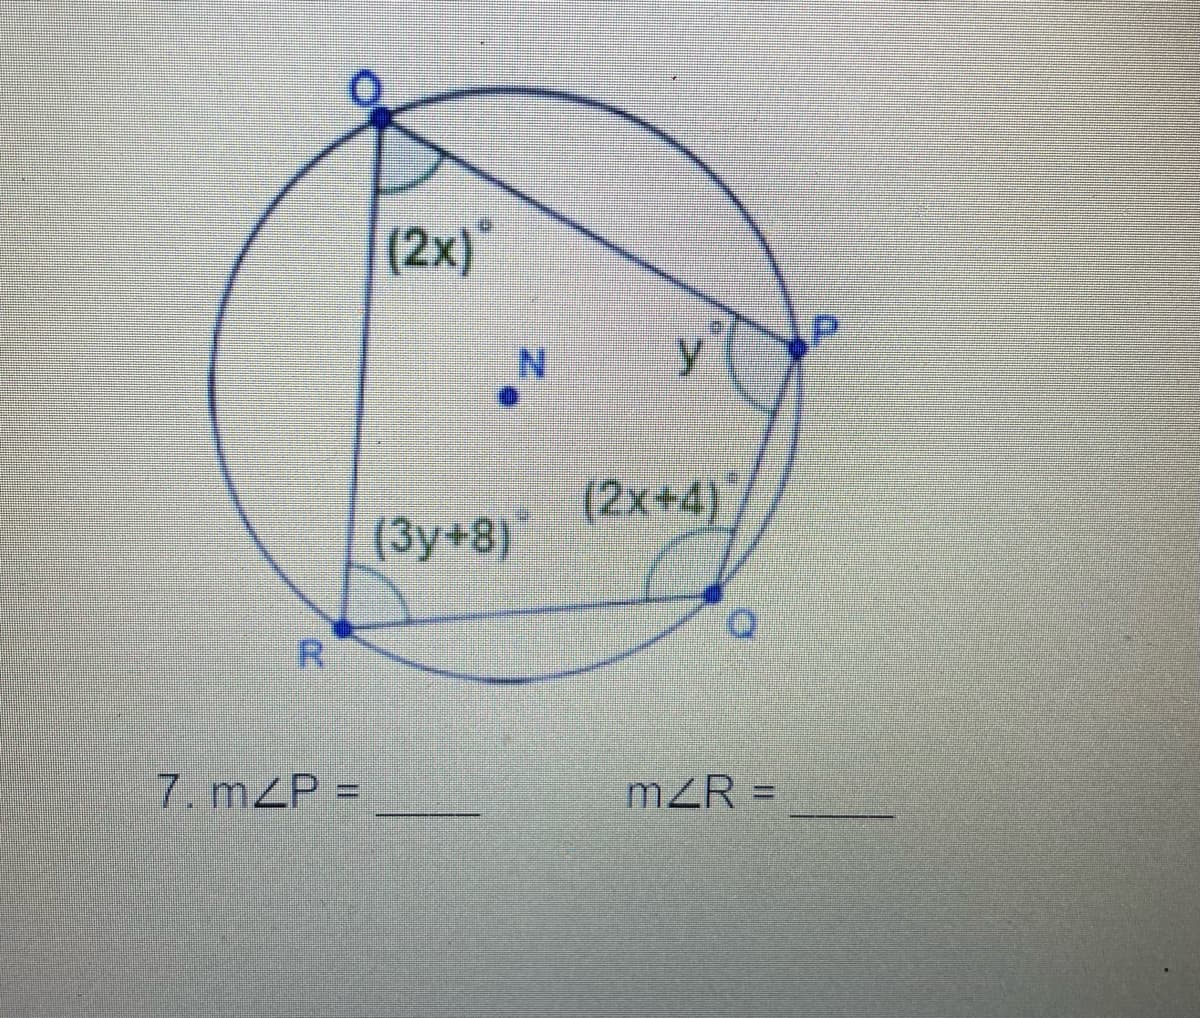 (2x)*
N.
y
(2x+4}
(3у+8)
7. mZP =
mZR =
%3D
